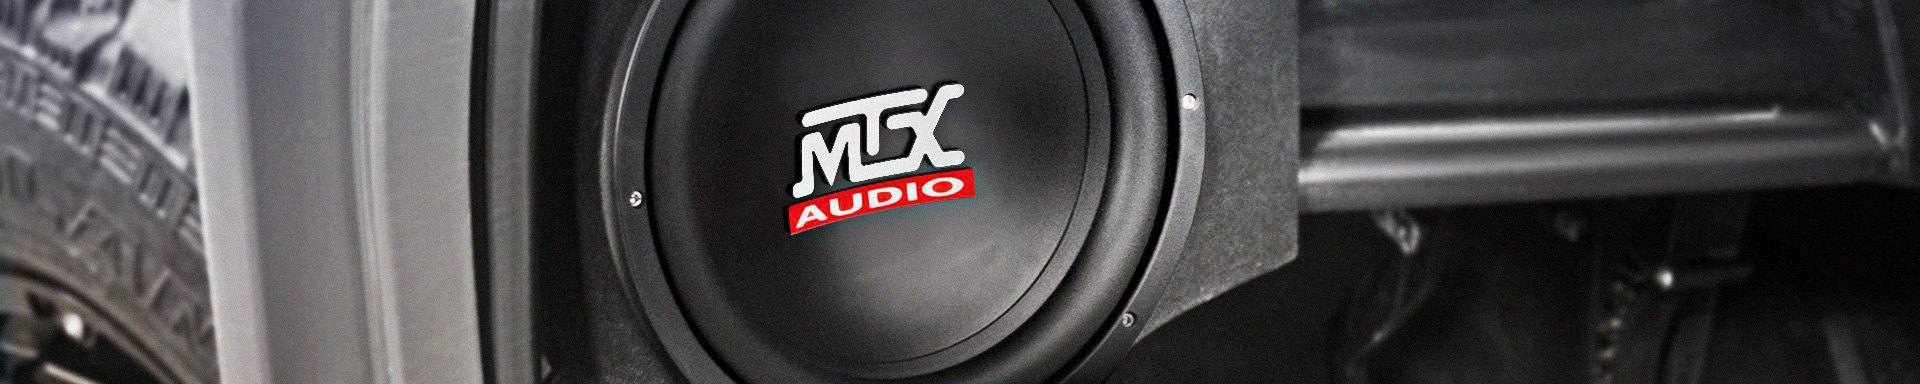 MTX Audio Amplifiers